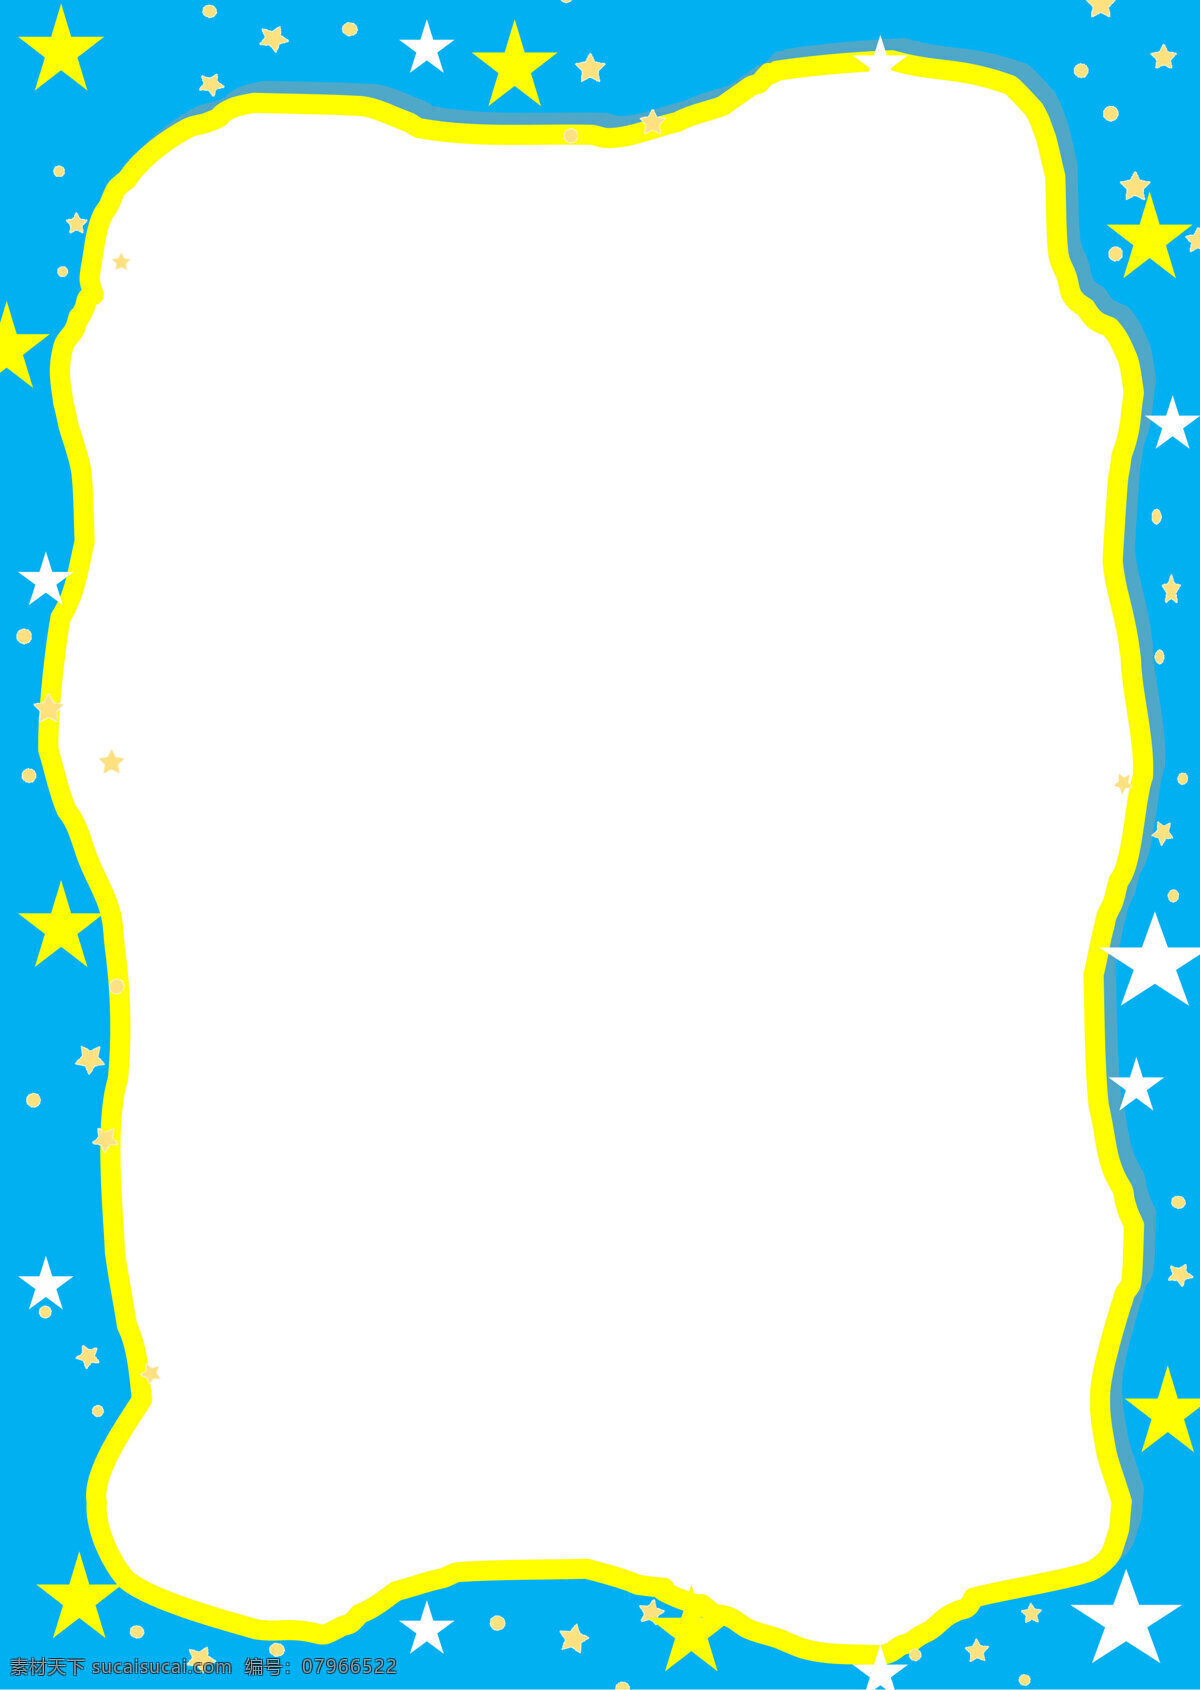 卡通 蓝色 星空 几何 边框 背景 底纹 手绘 儿童 底纹边框 边框相框